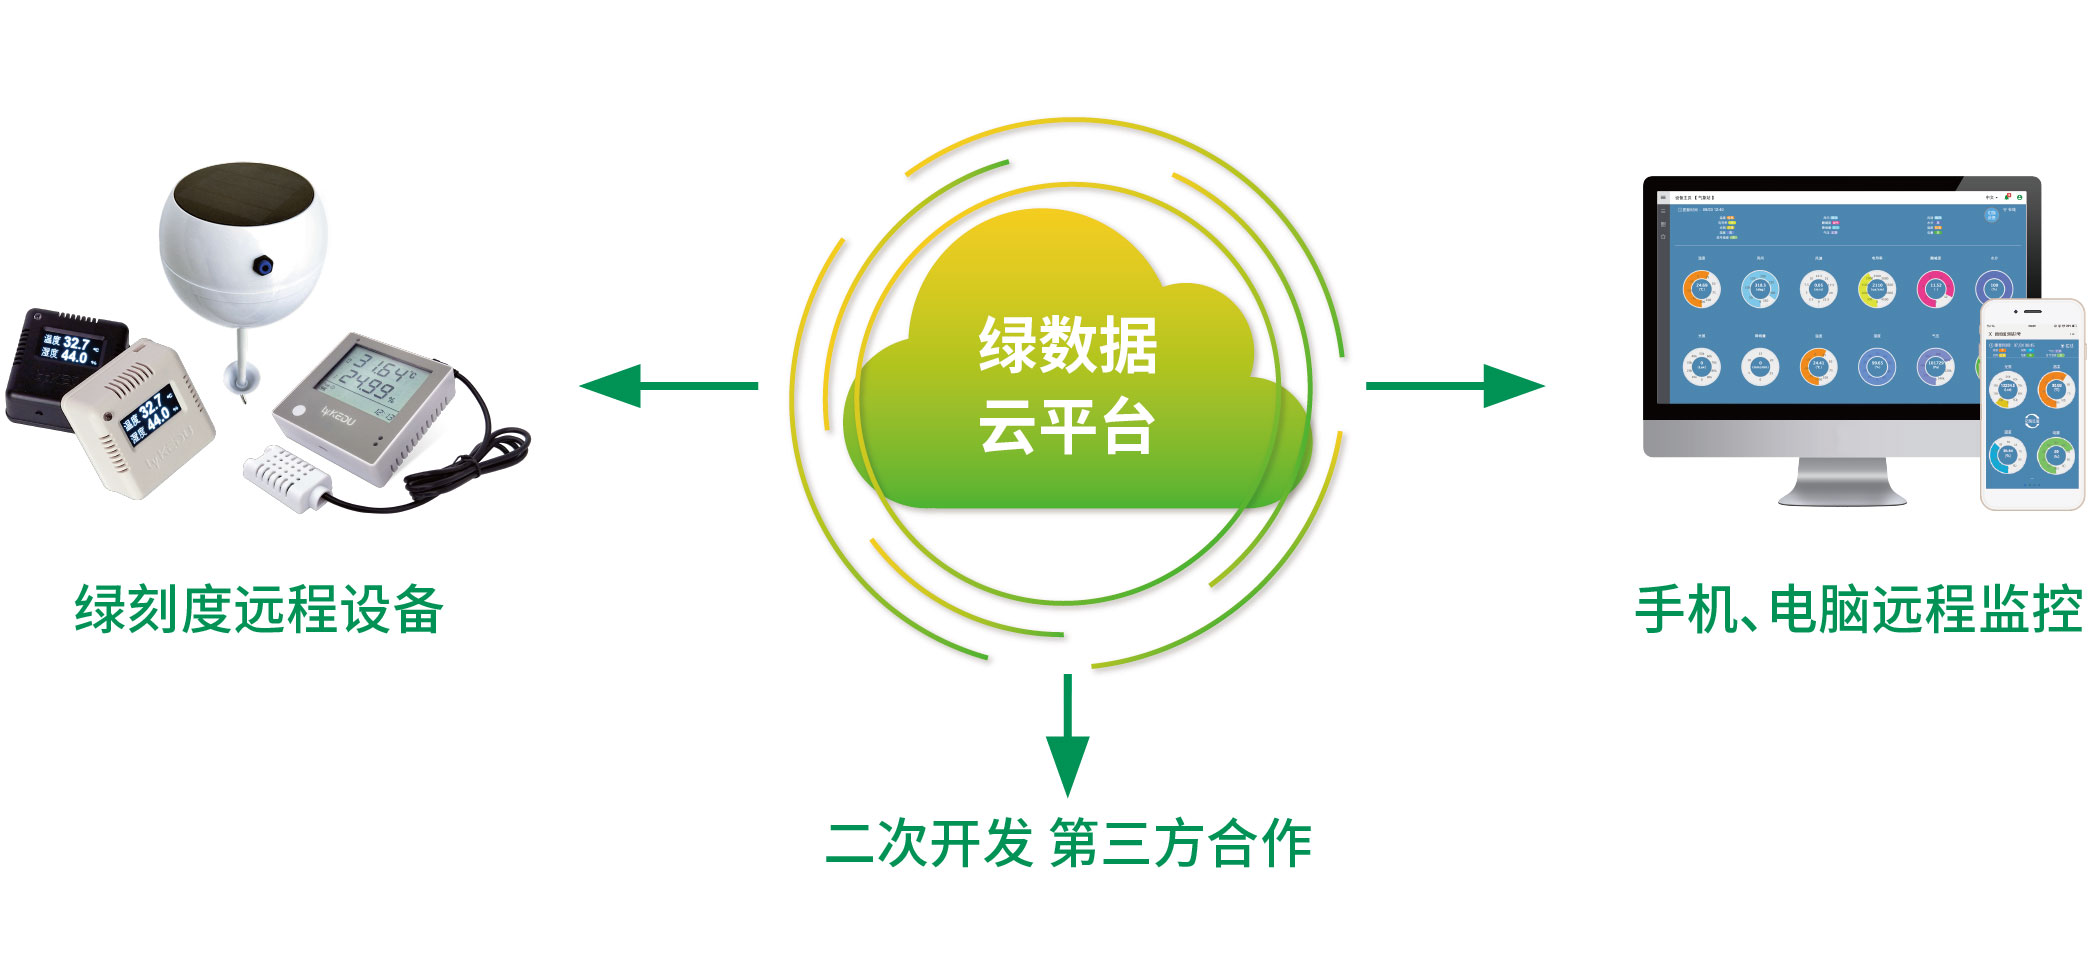 绿数据云平台